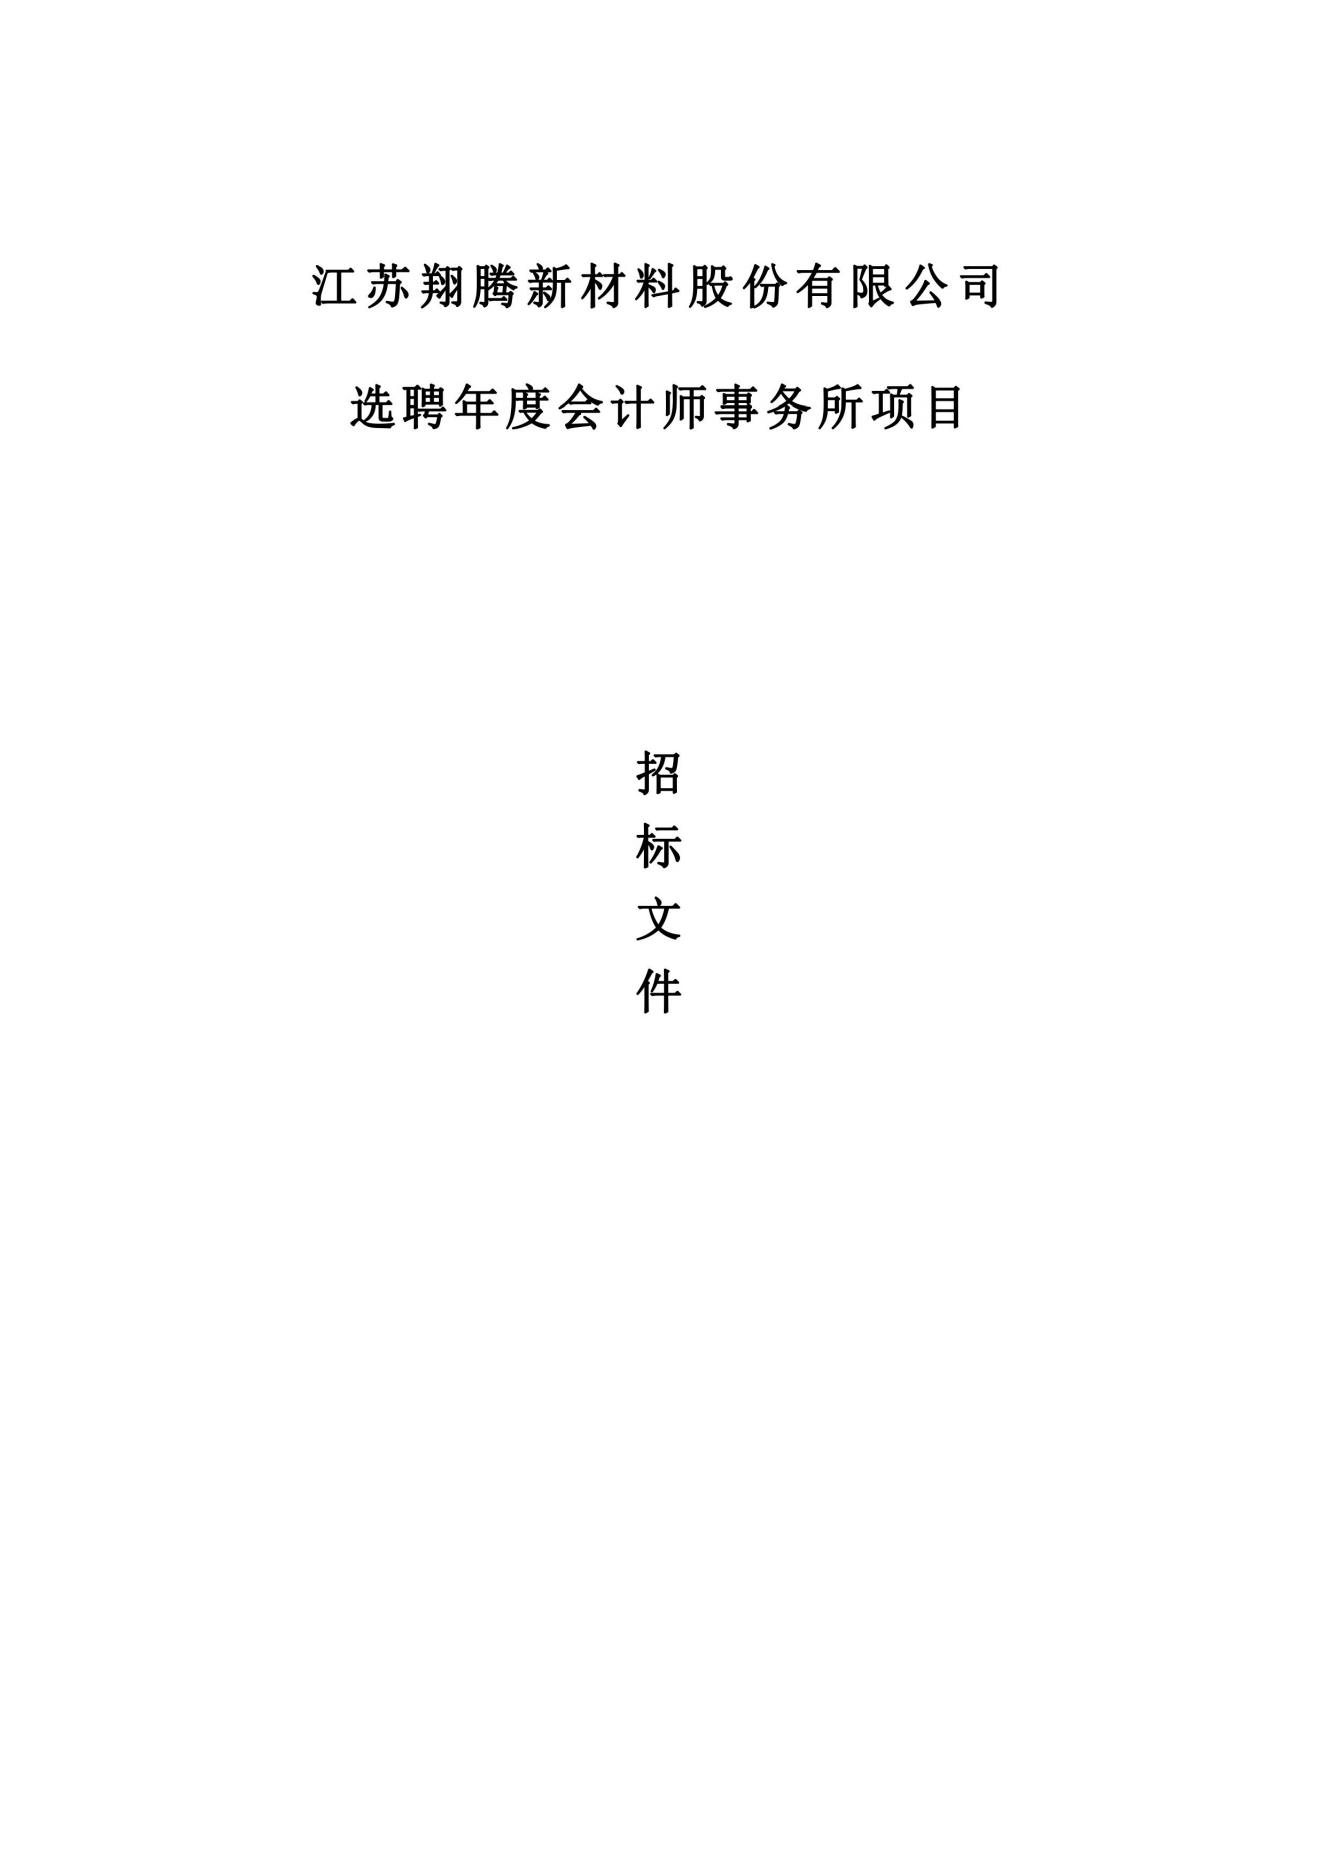 江苏翔腾新材料股份有限公司 选聘年度会计师事务所项目